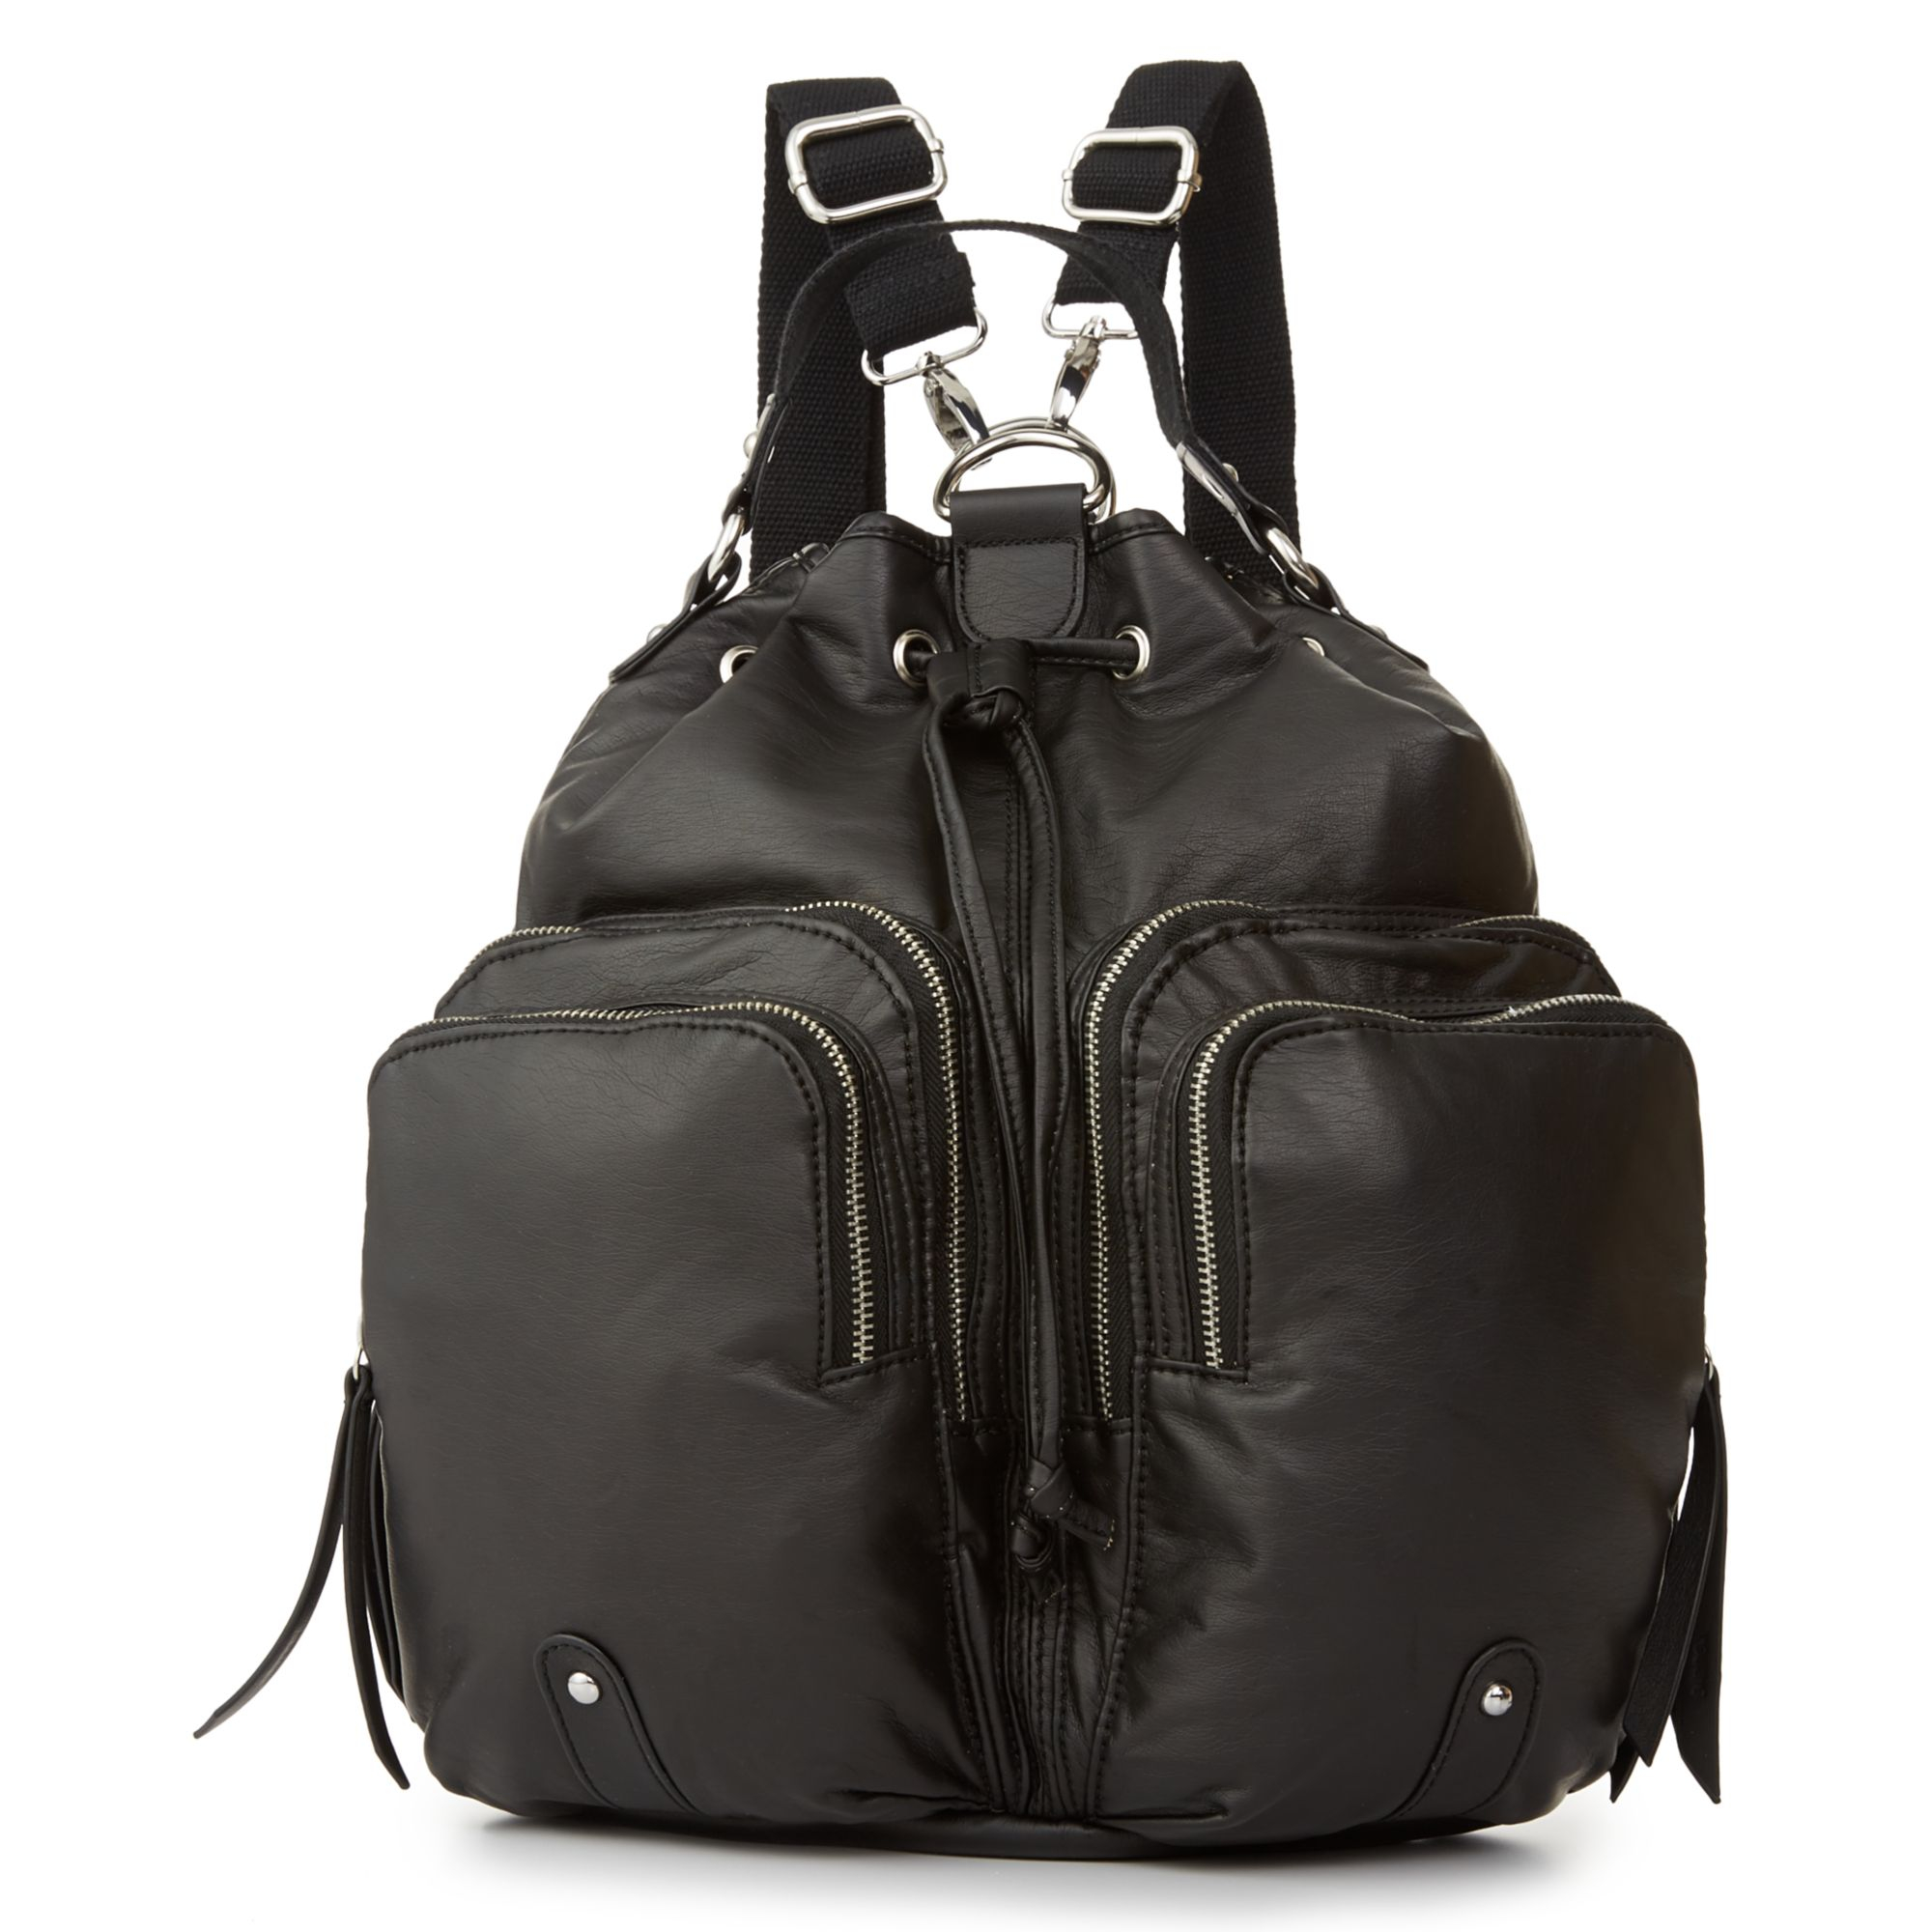 Lyst - Kensie Backpack in Black